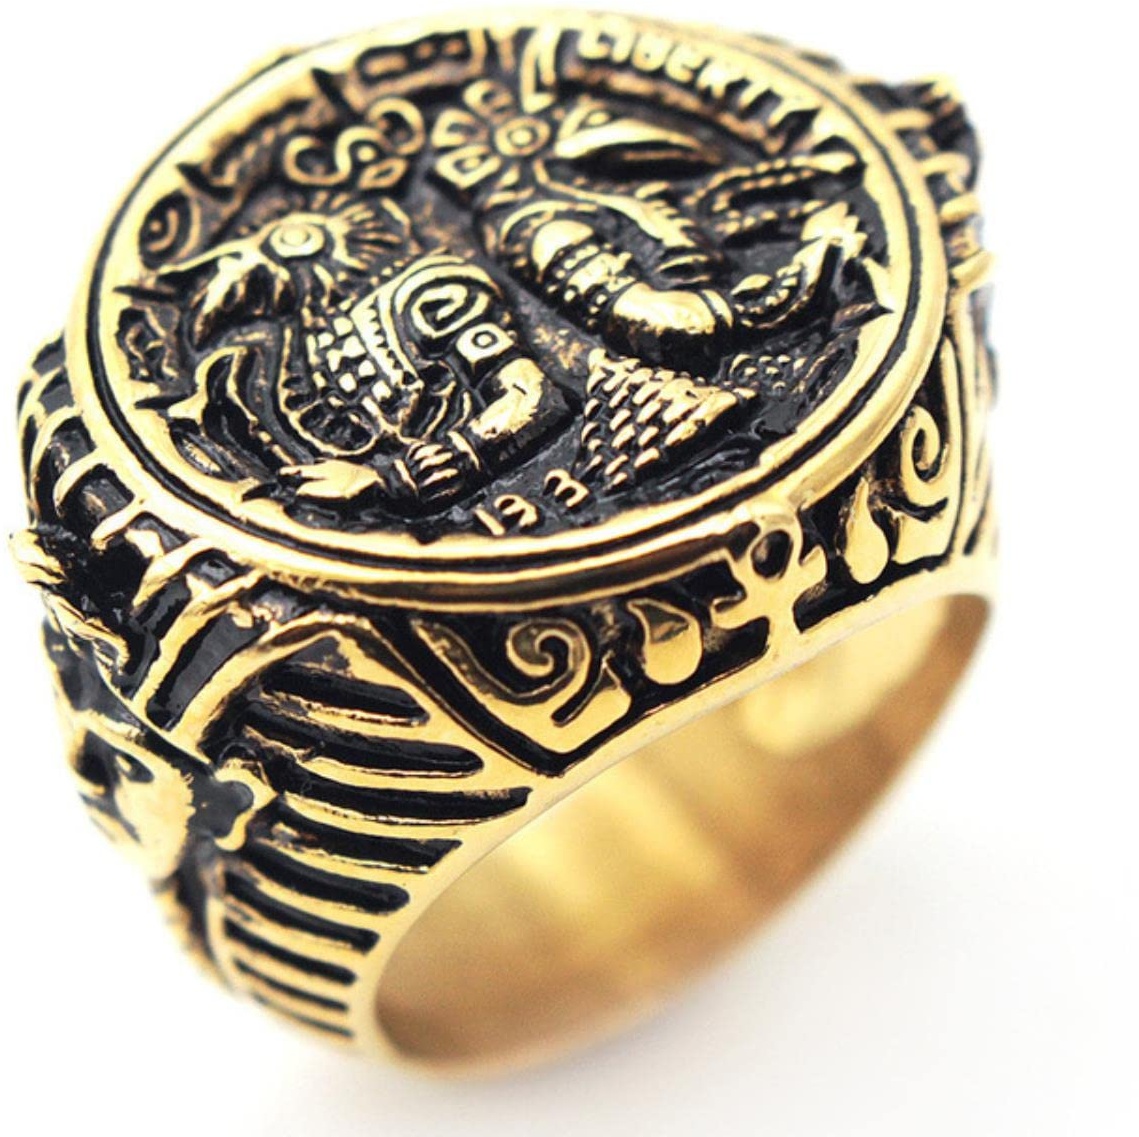 YAHOYA Vintage Herren Titan Stahl Ring Altägyptische Anubis Wanderer Edelstahl Ringe für Männer Schmuck Accessoires